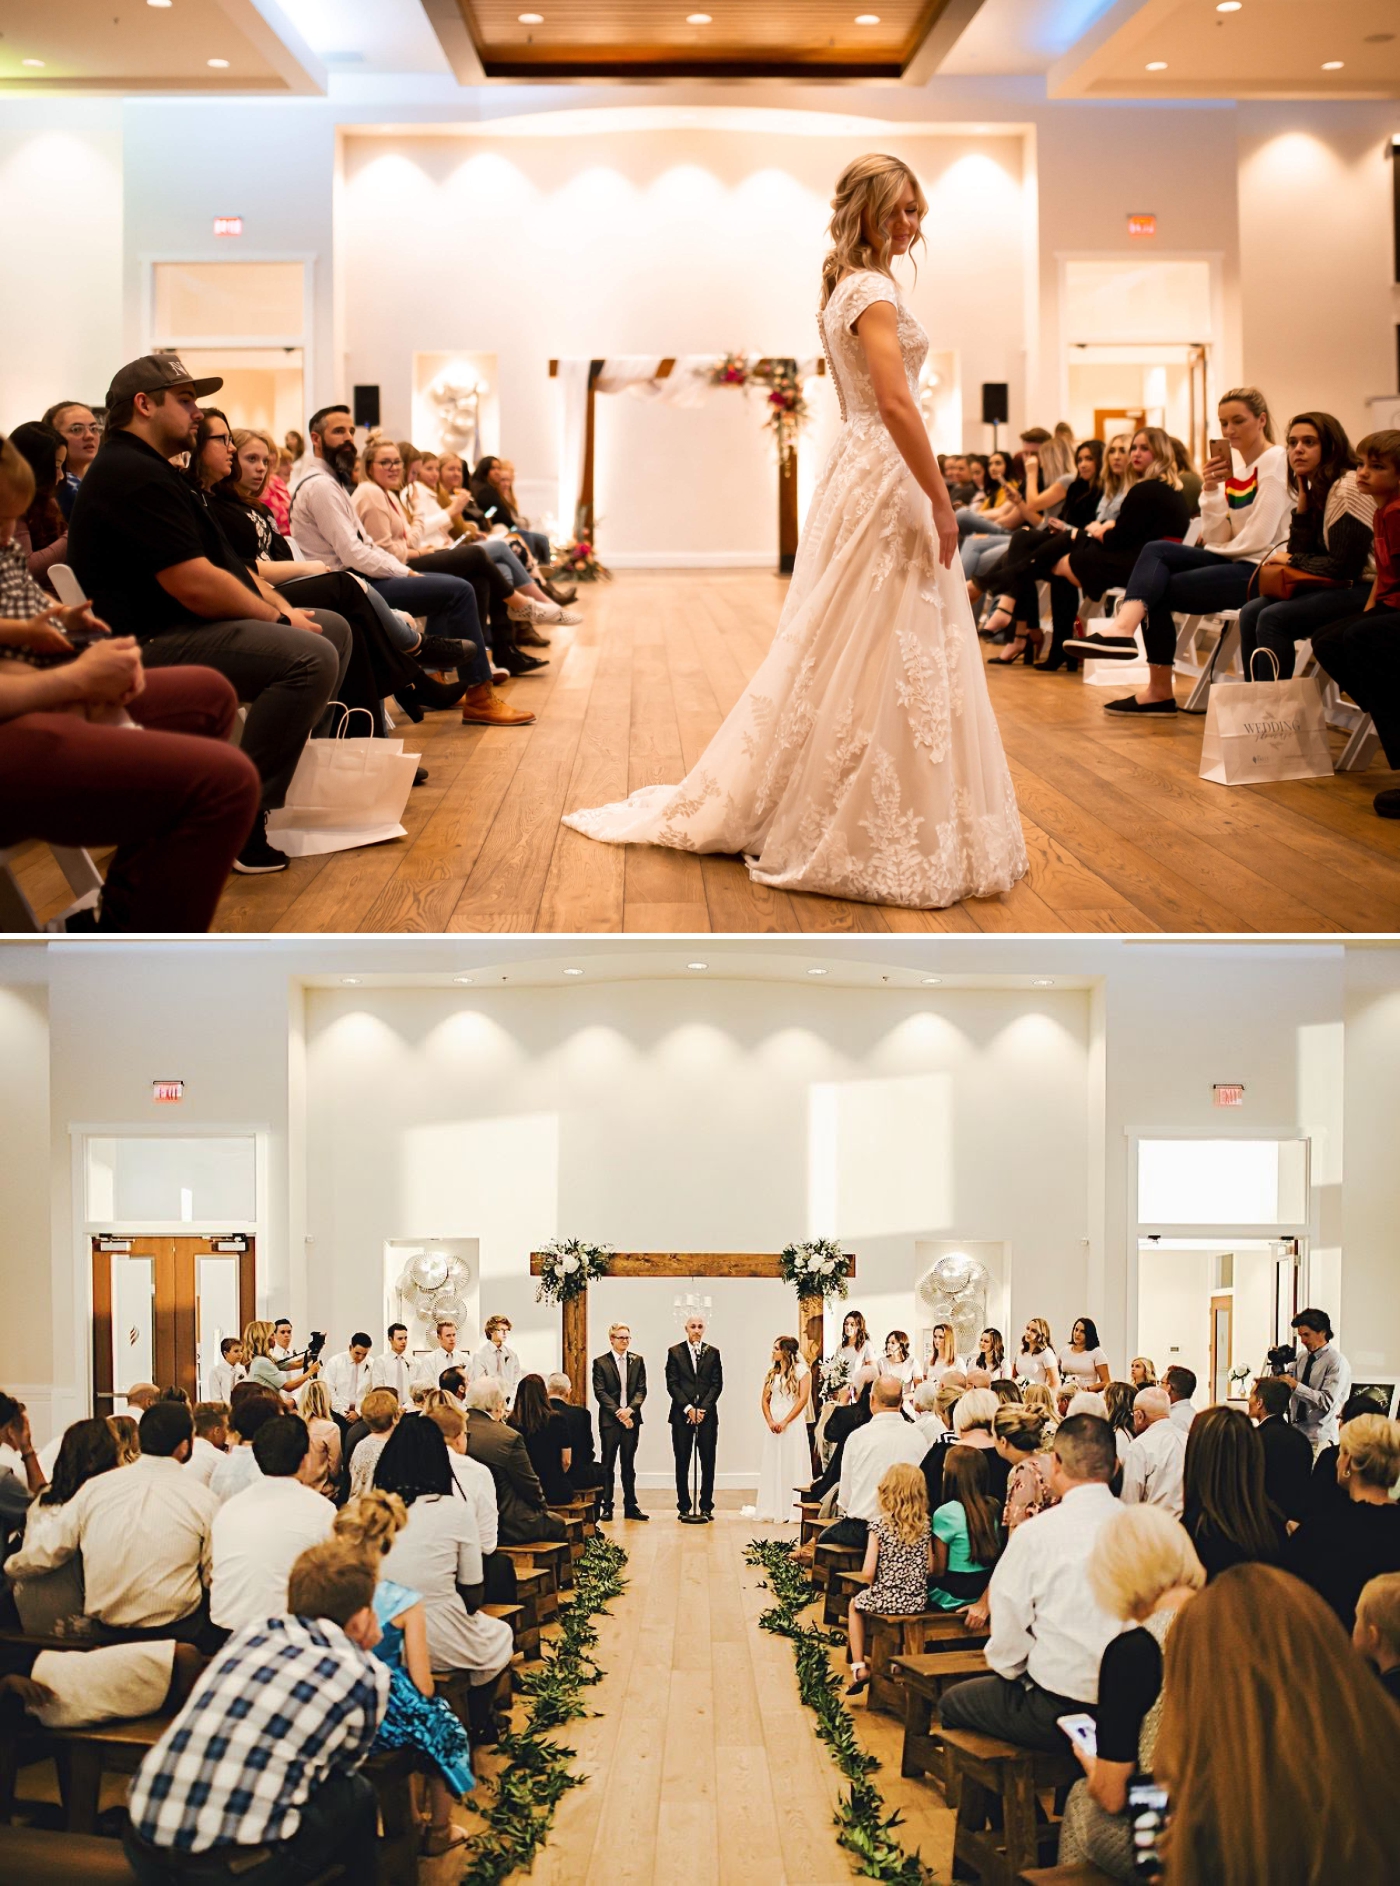 The best indoor wedding venues in Arizona